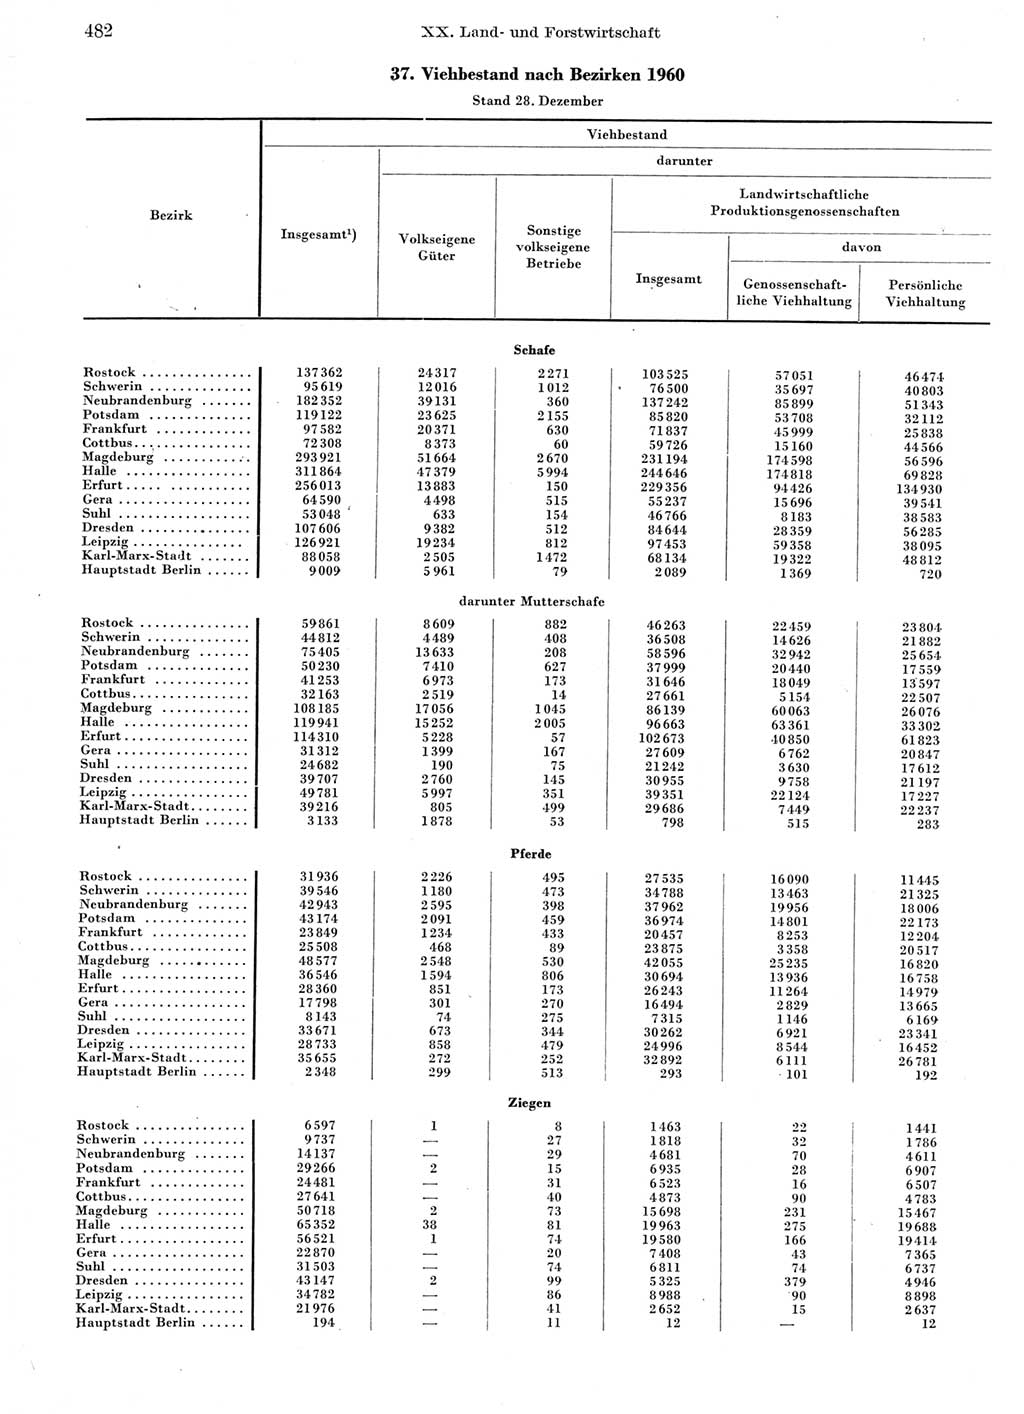 Statistisches Jahrbuch der Deutschen Demokratischen Republik (DDR) 1960-1961, Seite 482 (Stat. Jb. DDR 1960-1961, S. 482)